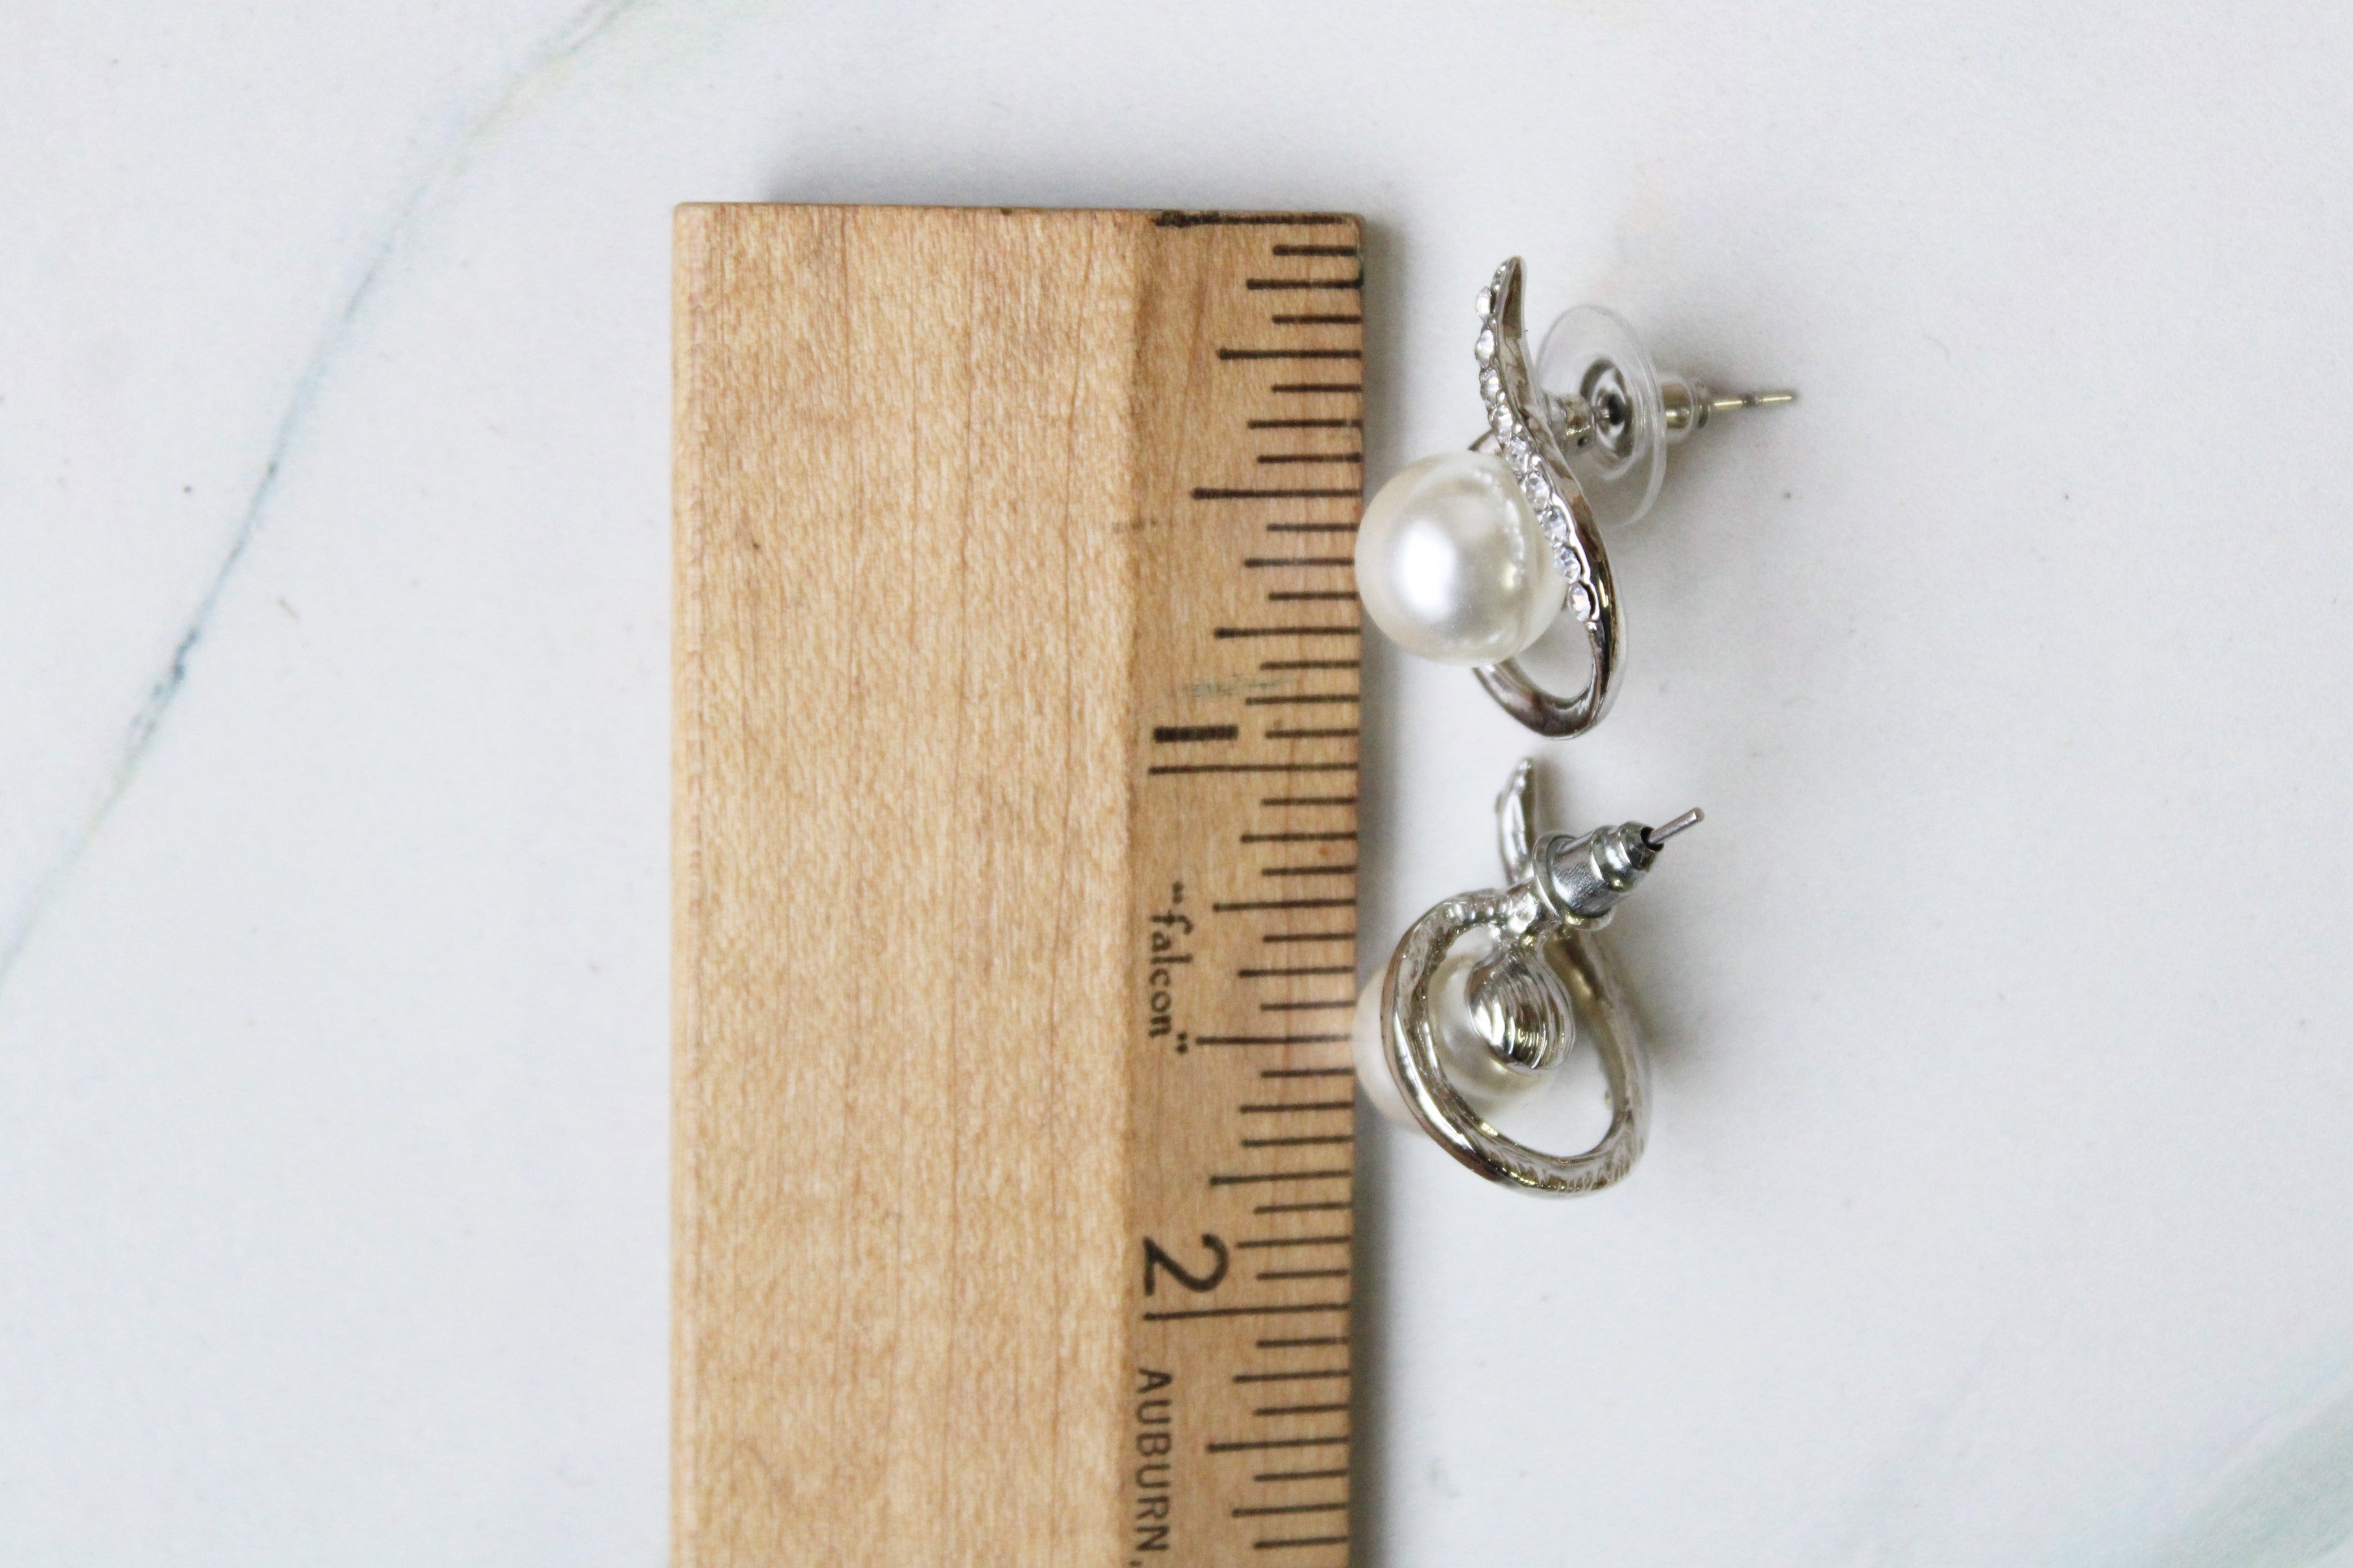 Faux Pearl & Silver Earrings